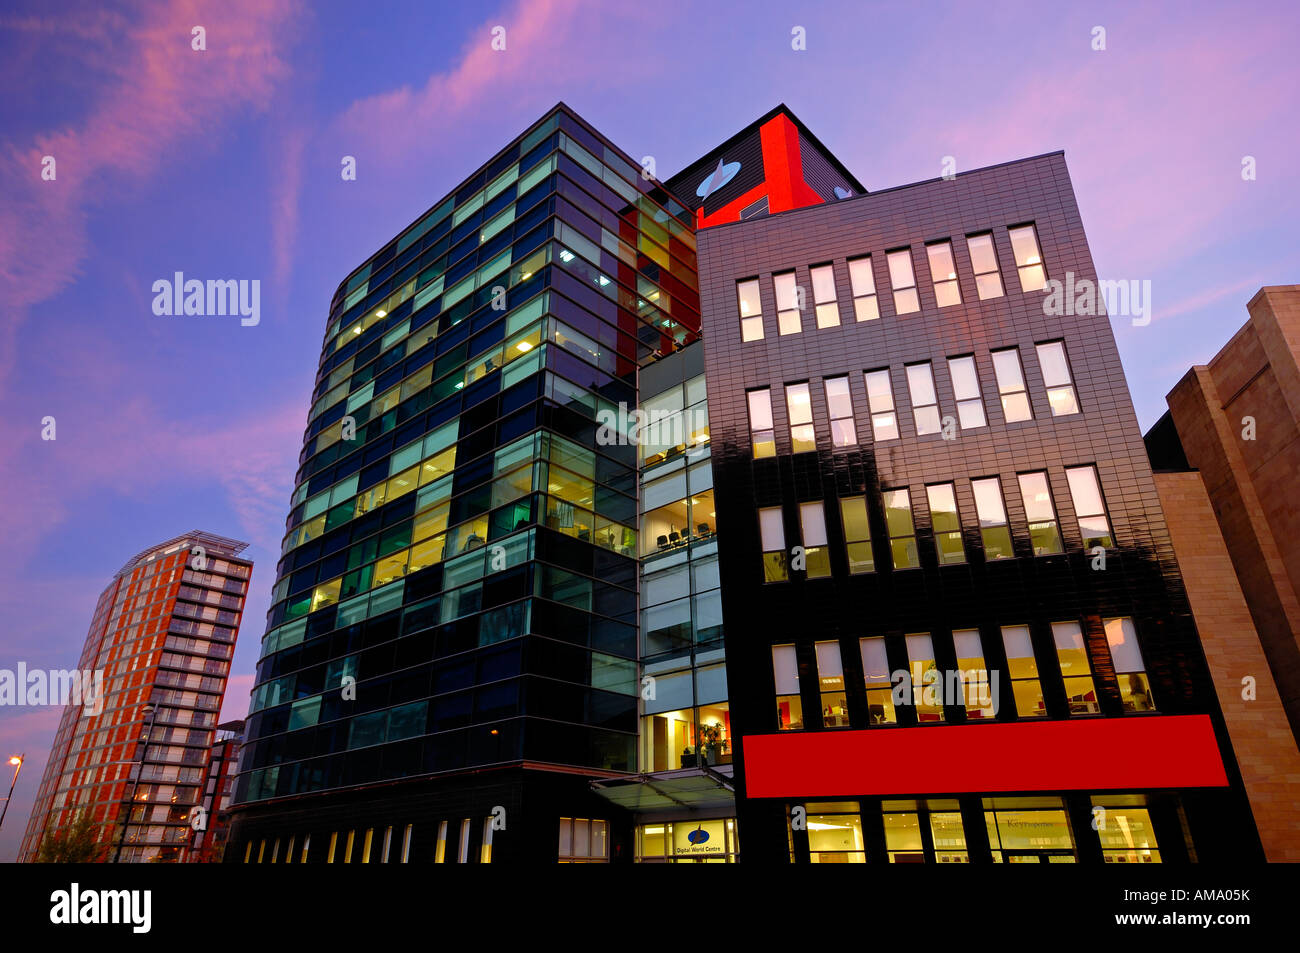 Bloc de bureau moderne à lowry centre nuit crépuscule soir Salford Quays Manchester en Angleterre Angleterre europe Banque D'Images